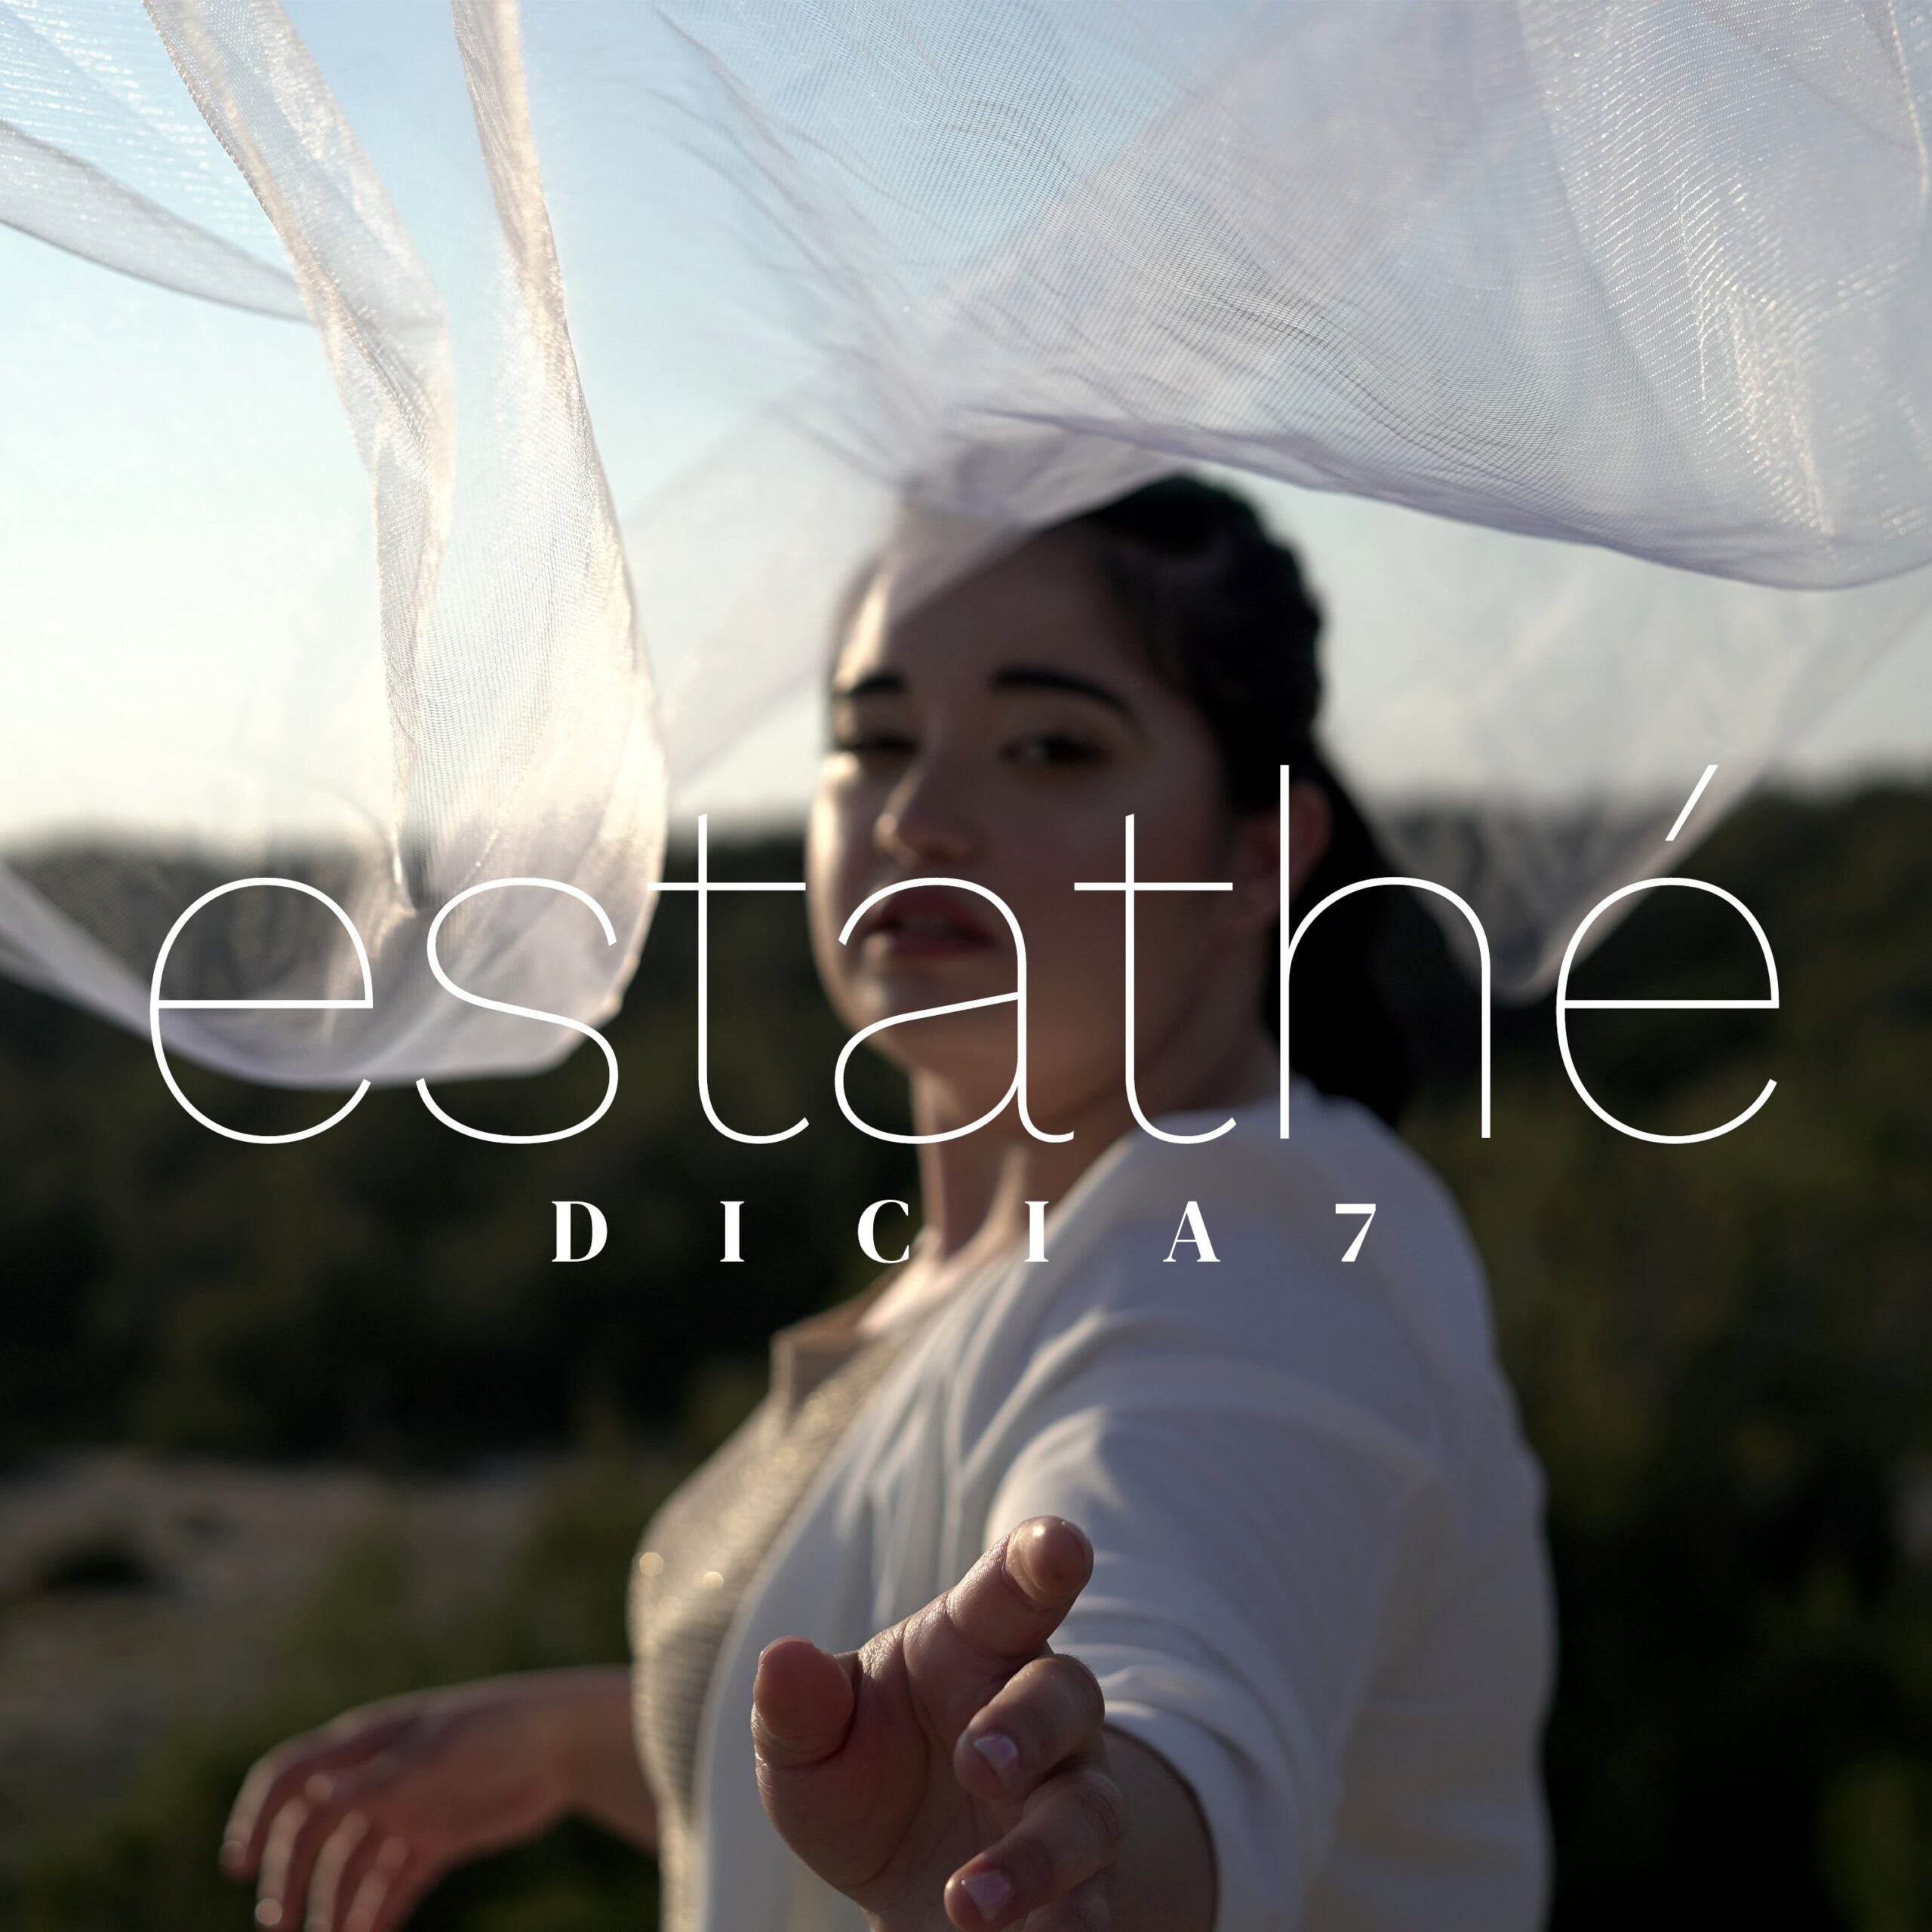 La giovane cantautrice Dicia7 presenta il suo nuovo singolo “Estathé”